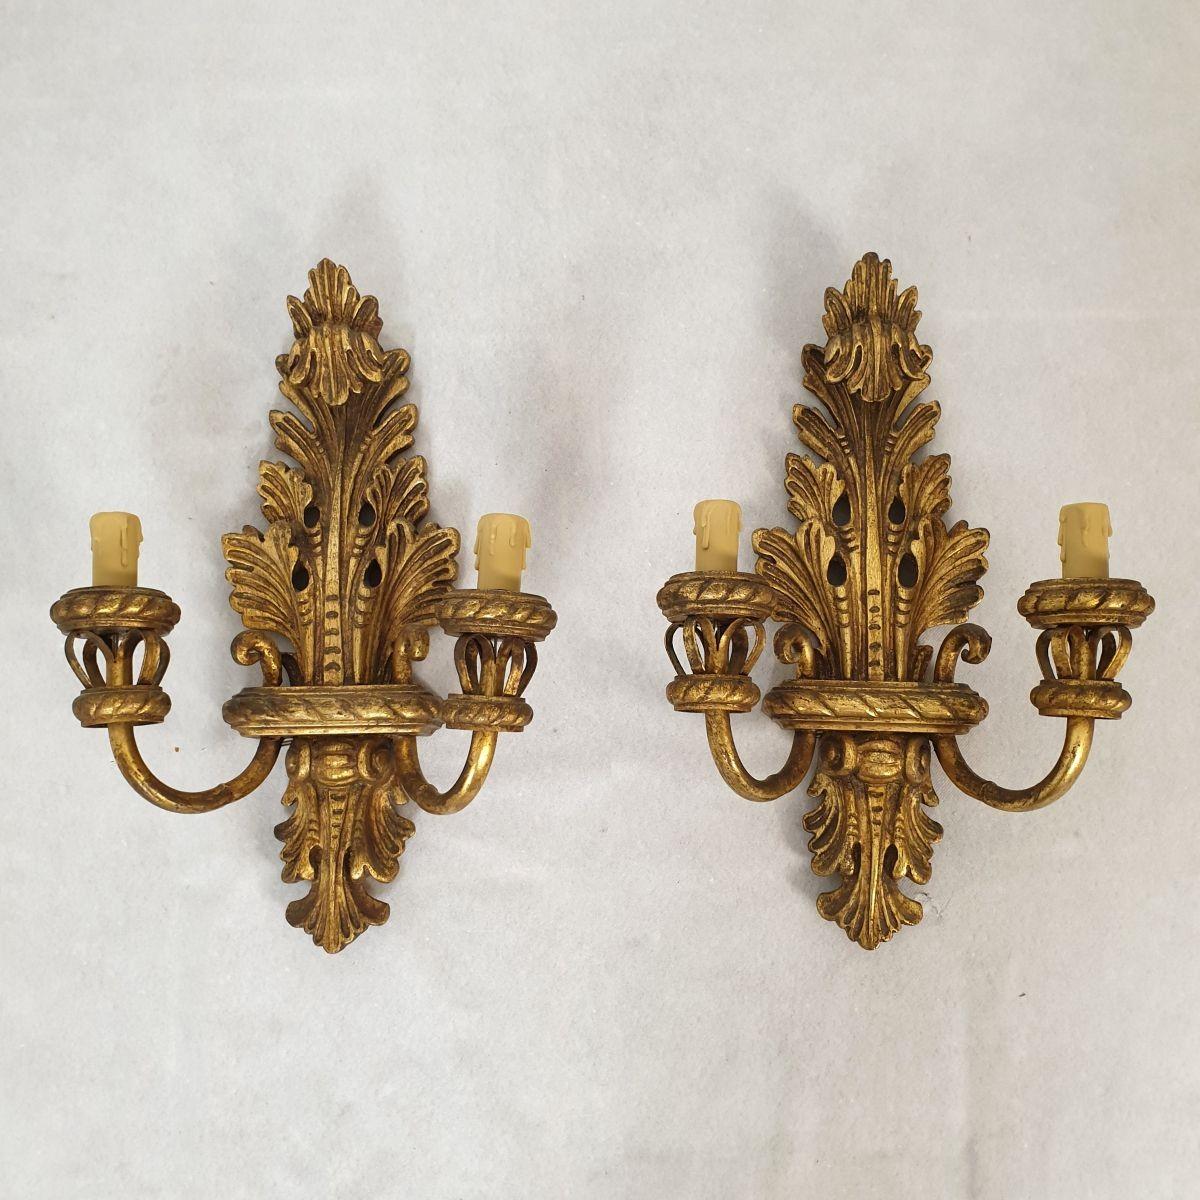 Paar antike Wandlampen aus vergoldetem Holz, Frankreich 1920er Jahre.
Die Wandleuchter sind groß und in ausgezeichnetem Zustand.
Sie sind aus Git-Holz gefertigt und mit neoklassischem Dekor und Stil geschnitzt.
Die Wappen sind aus vergoldetem Eisen